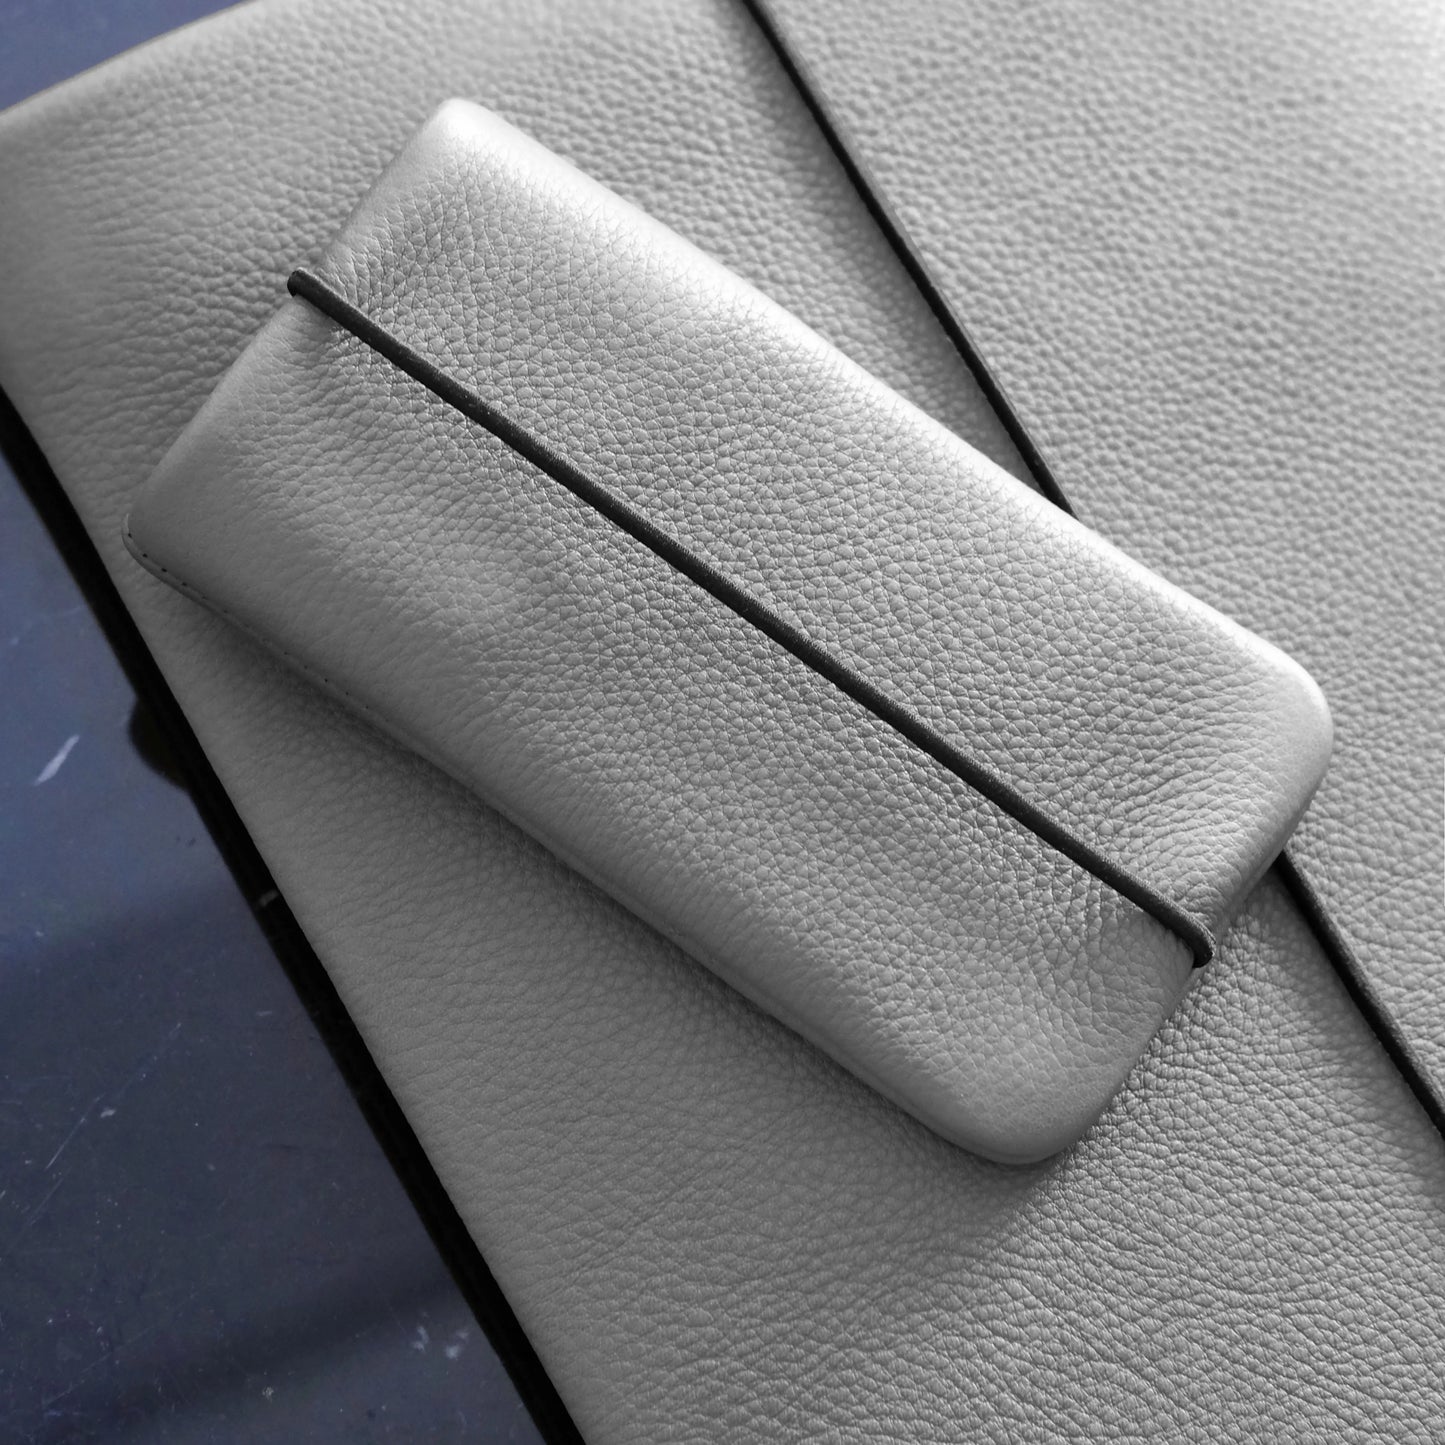 Leder Handyhüllle in grau liegt auf einer passenden grauen Macbookhülle aus Leder